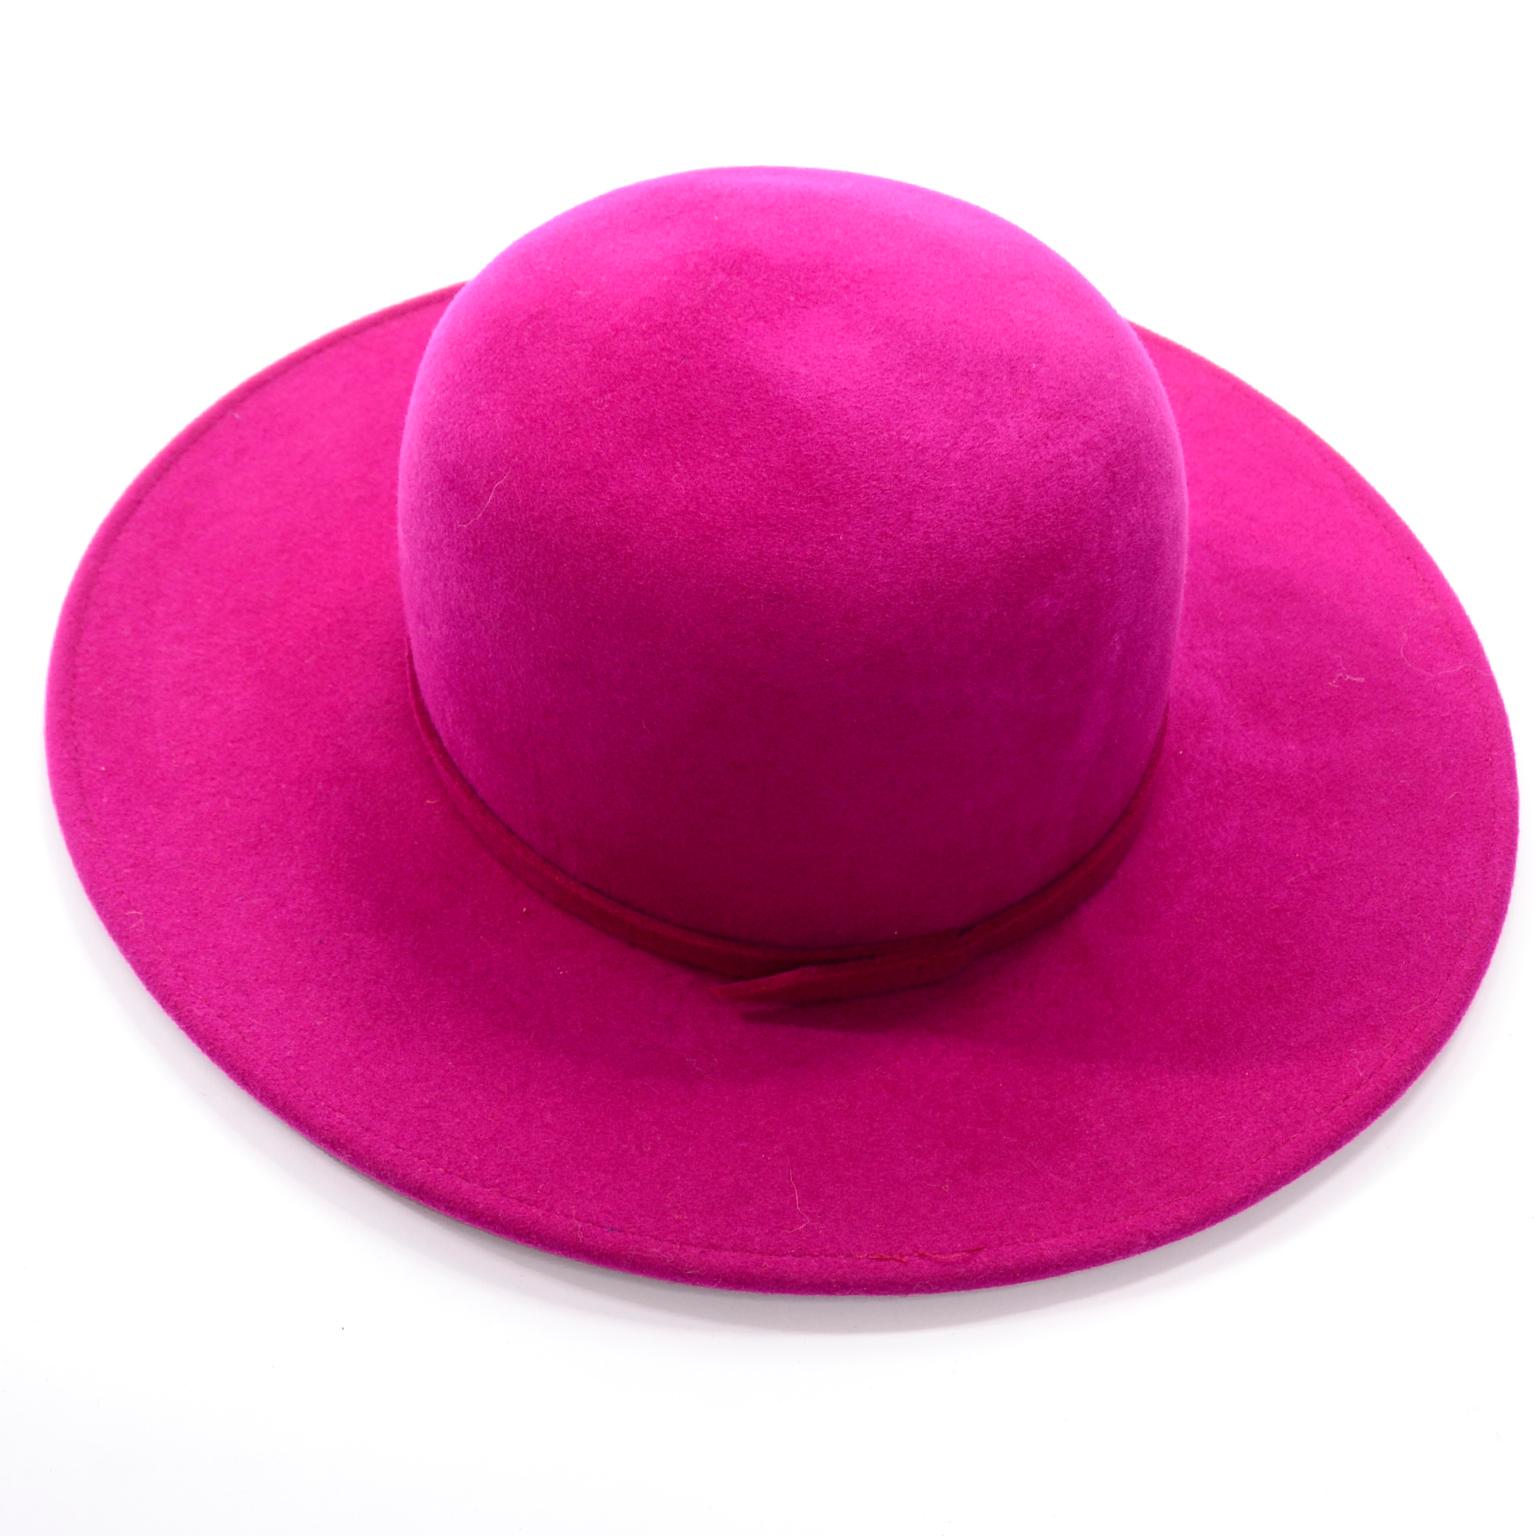 Vintage Frank Olive Magenta Structured Brim Pink Felted Wool Hat I Magnin 1